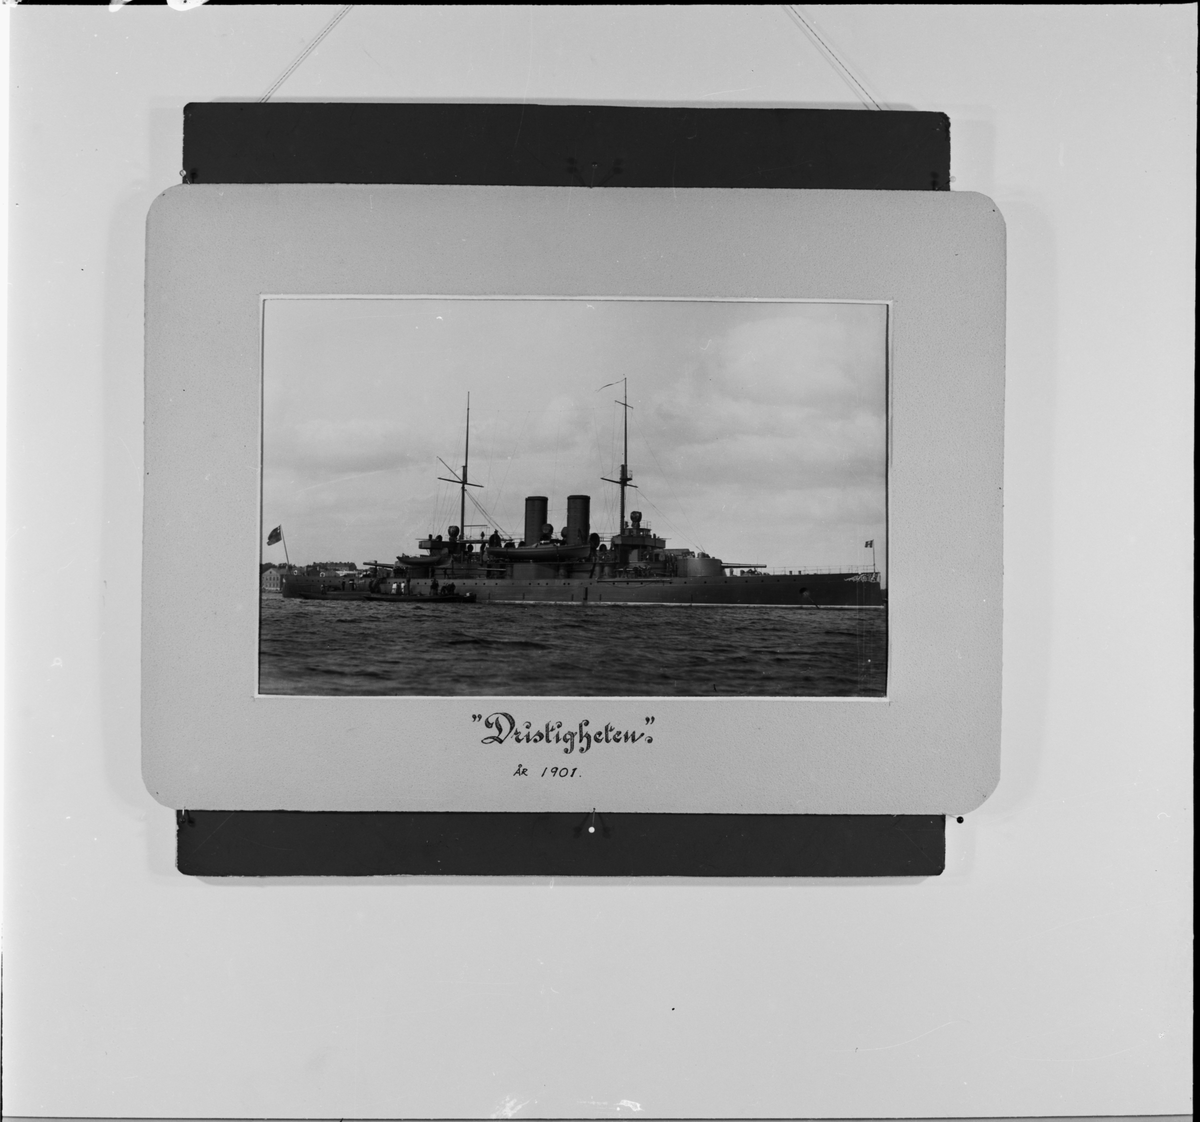 Reproduktion av en fotografi som visar pansarbåten Dristigheten år 1901.